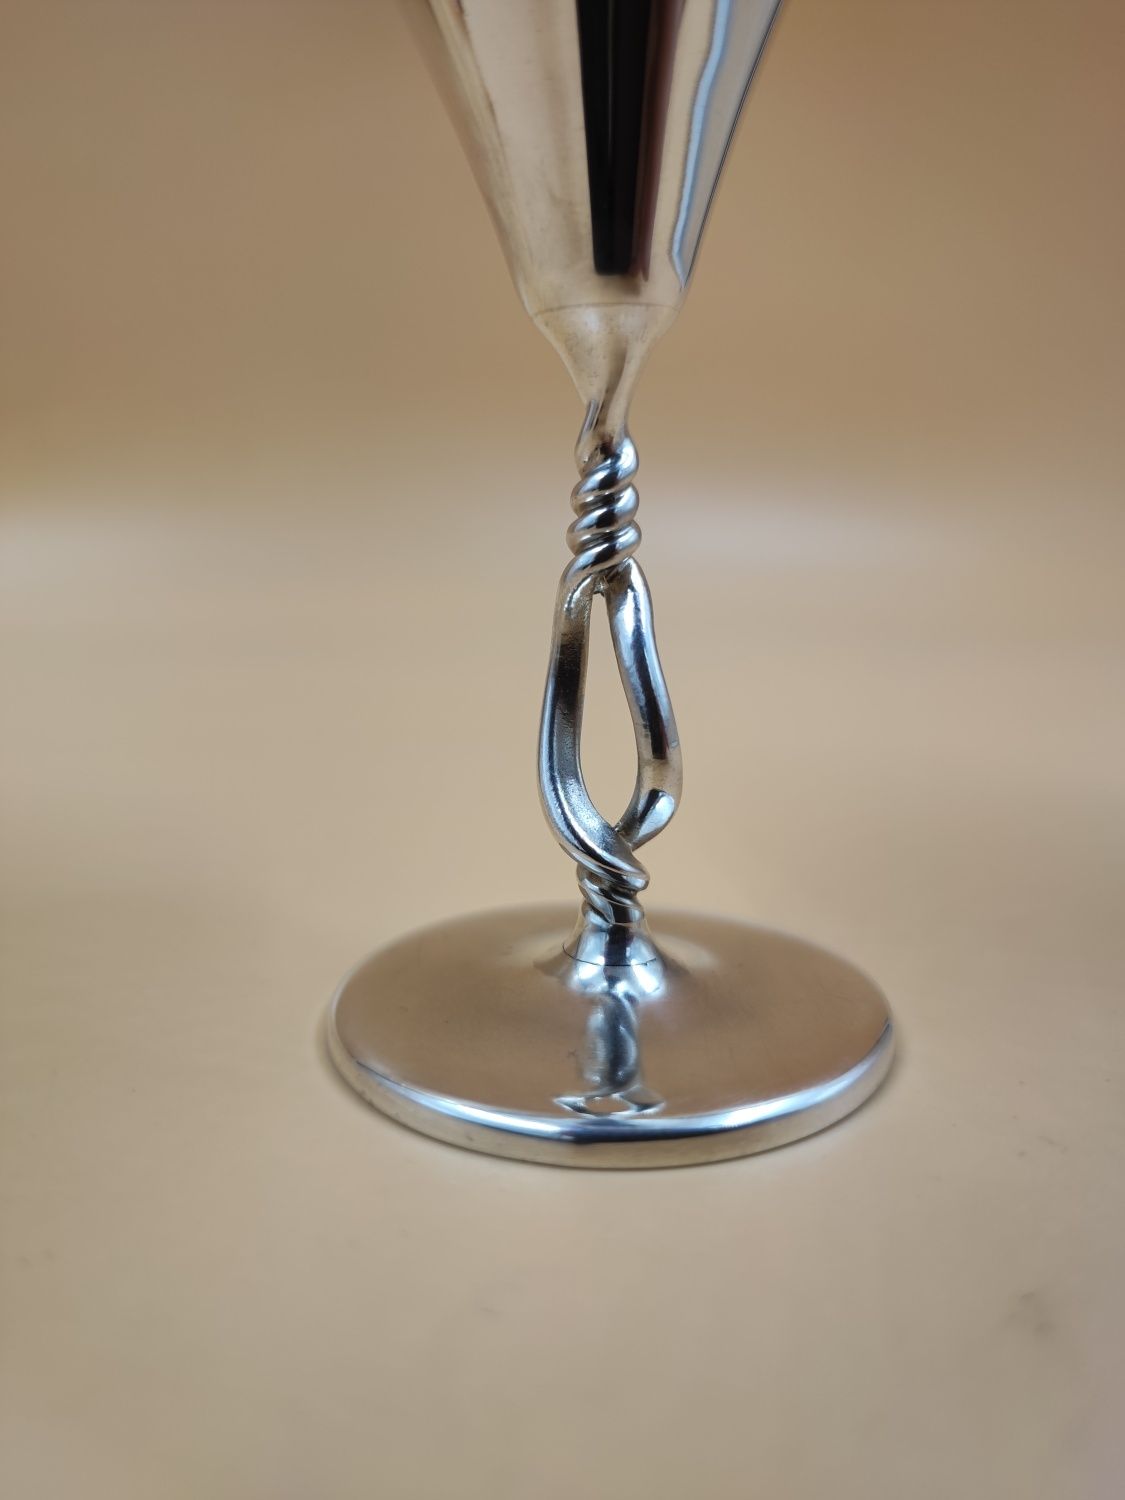 Рюмка серебро в форме martini glass 50 мл